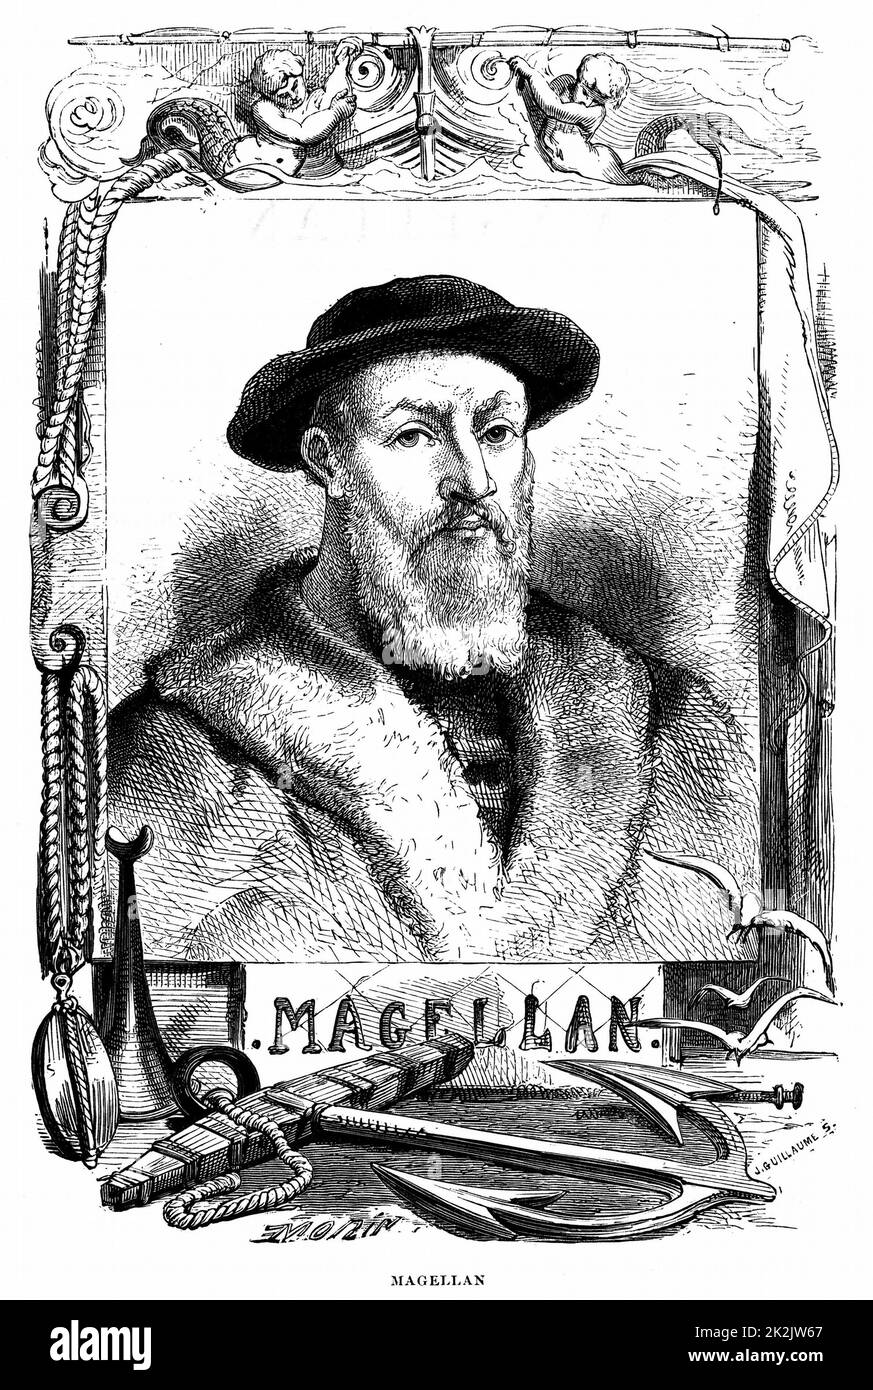 Ferdinand Magellan (c) 1480-1521 Portugiesische Navigator. Erste Expedition rund um den Globus cirumnavigate geführt. Abgerundet Magellanstraße vom Atlantik zum Pazifik, Oktober-November 1519. Gravur veröffentlicht Paris 1868 Stockfoto